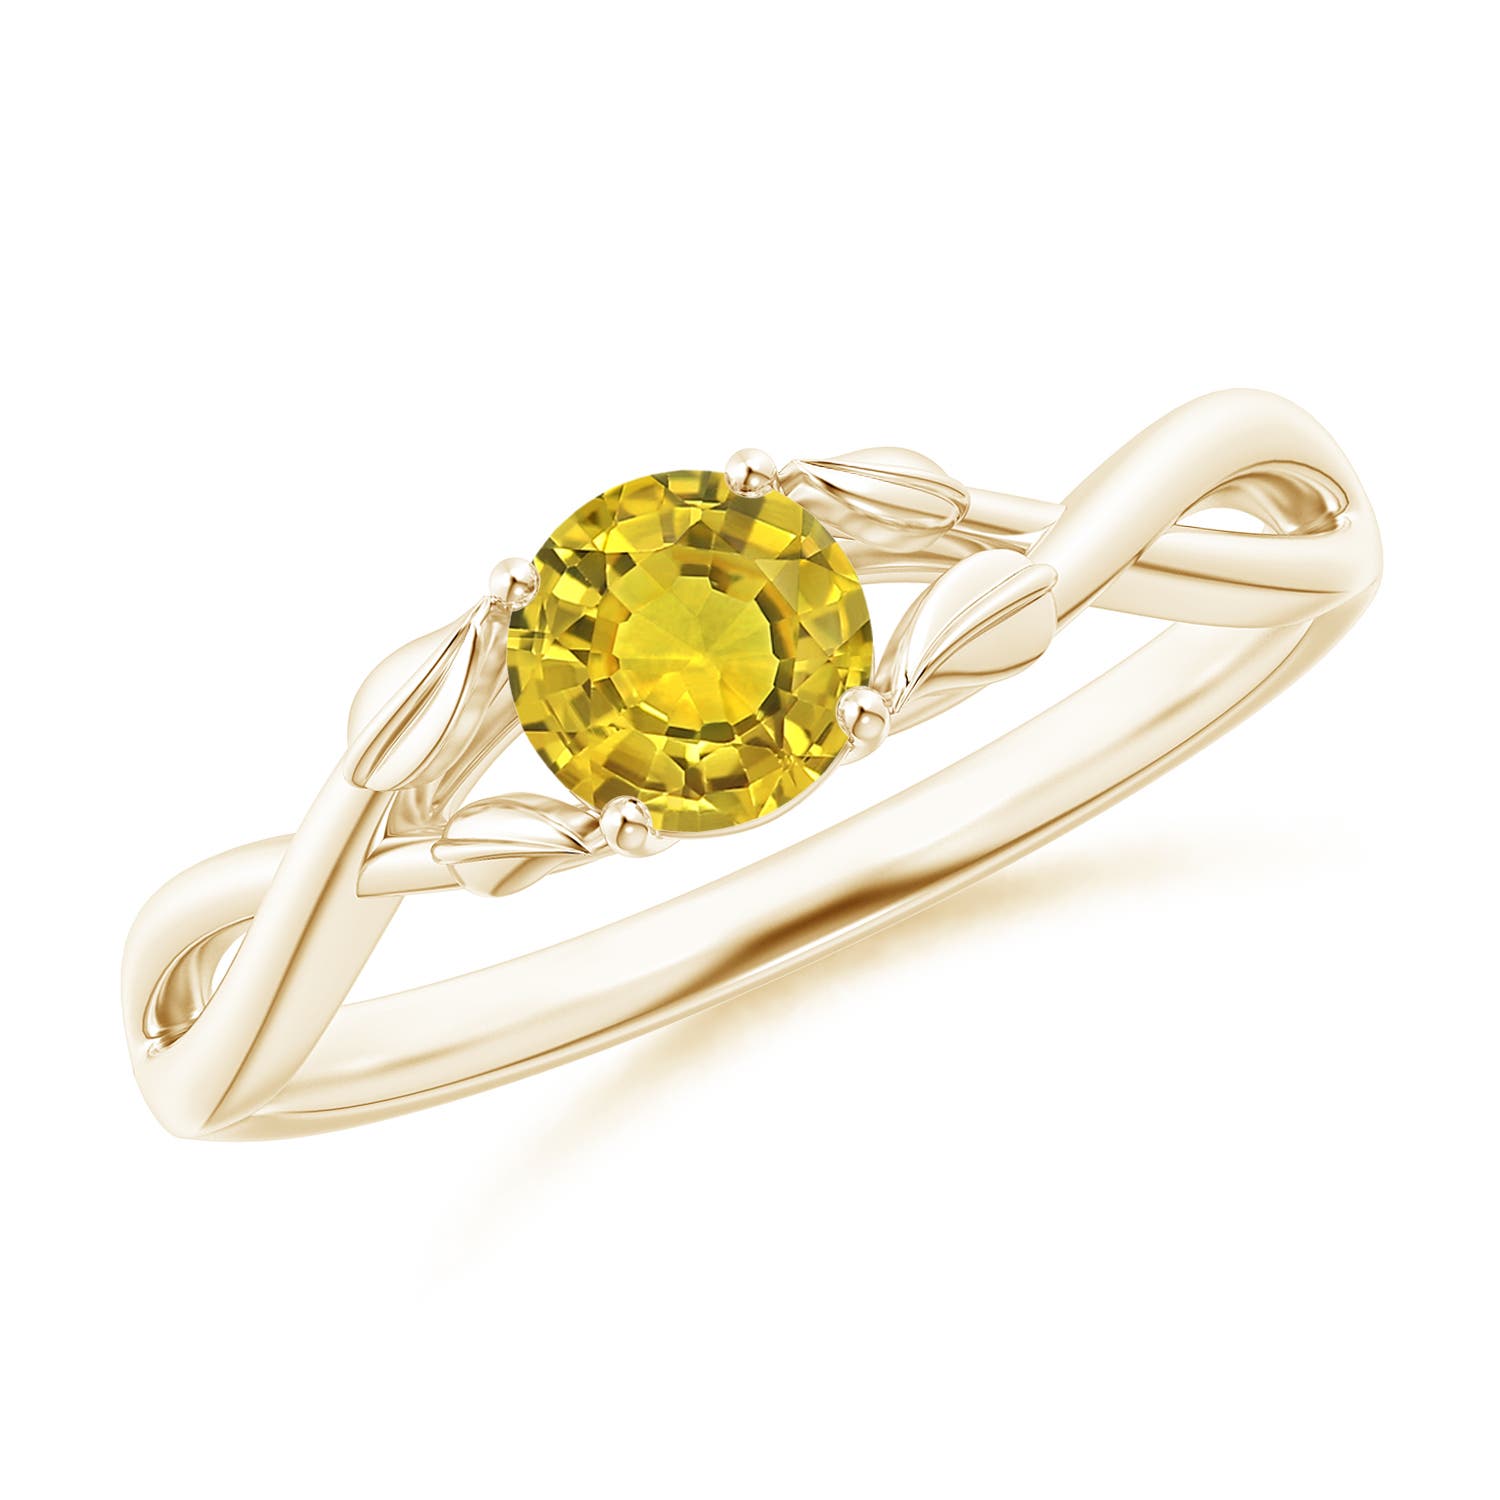 Showroom of Yellow sapphire ring | Jewelxy - 132398